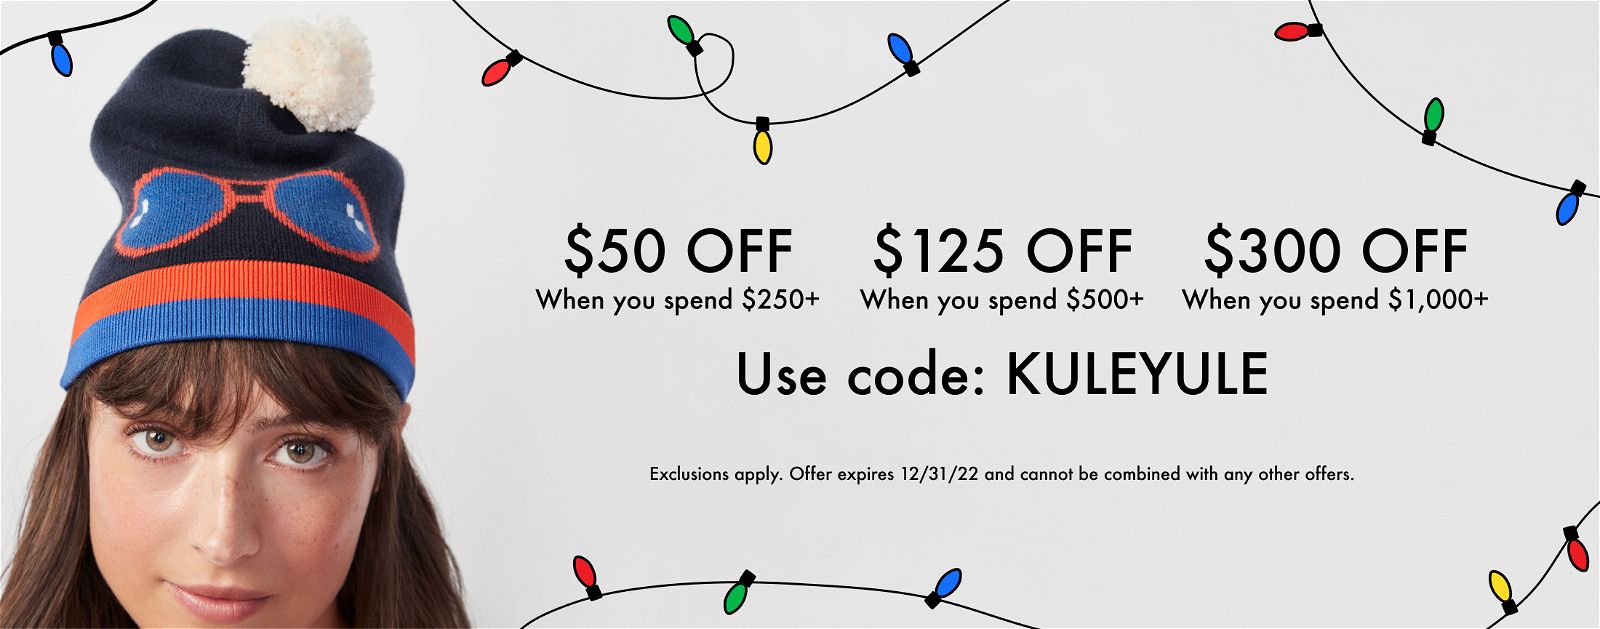 Buy more, save more with code: KULEYULE $50 off hwen you speand $250+, $125 off when you spend $500+, $300 off when you spend $1000+